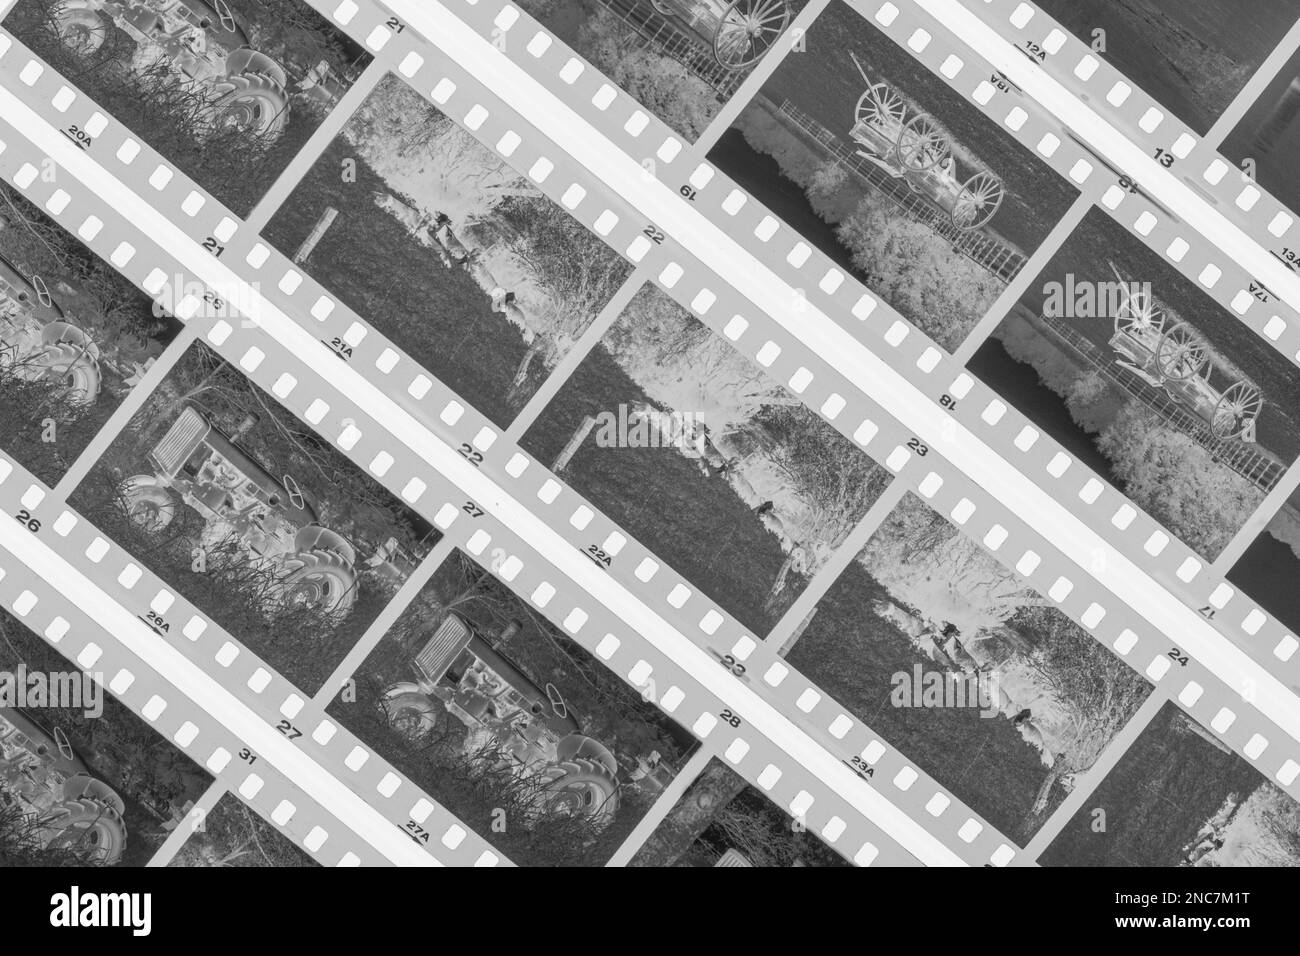 La fotografía de cine está haciendo un comback, y esta fotografía es un primer plano de 35mm negativos en blanco y negro sobre una mesa de luz. Las fotos pertenecen a la p Foto de stock